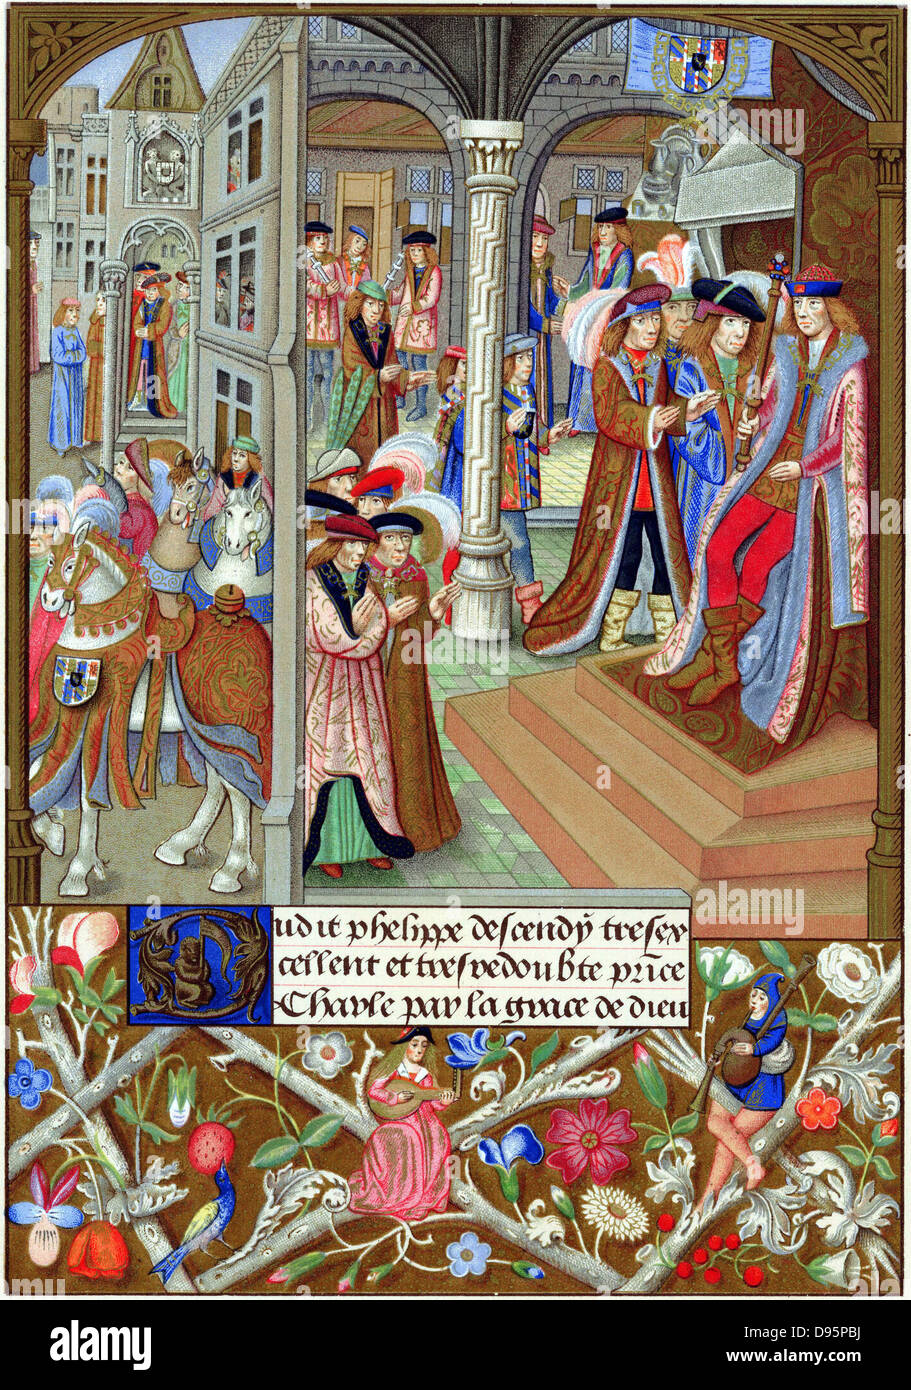 Carlos el Temerario (1433-77), duque de Borgoña en 1467, entronizado y rodeado por sus nobles y consejeros. En frontera iluminada, una mujer desempeña un laúd y un hombre las gaitas. A partir del siglo XV Chromolithograph miniatura. Foto de stock